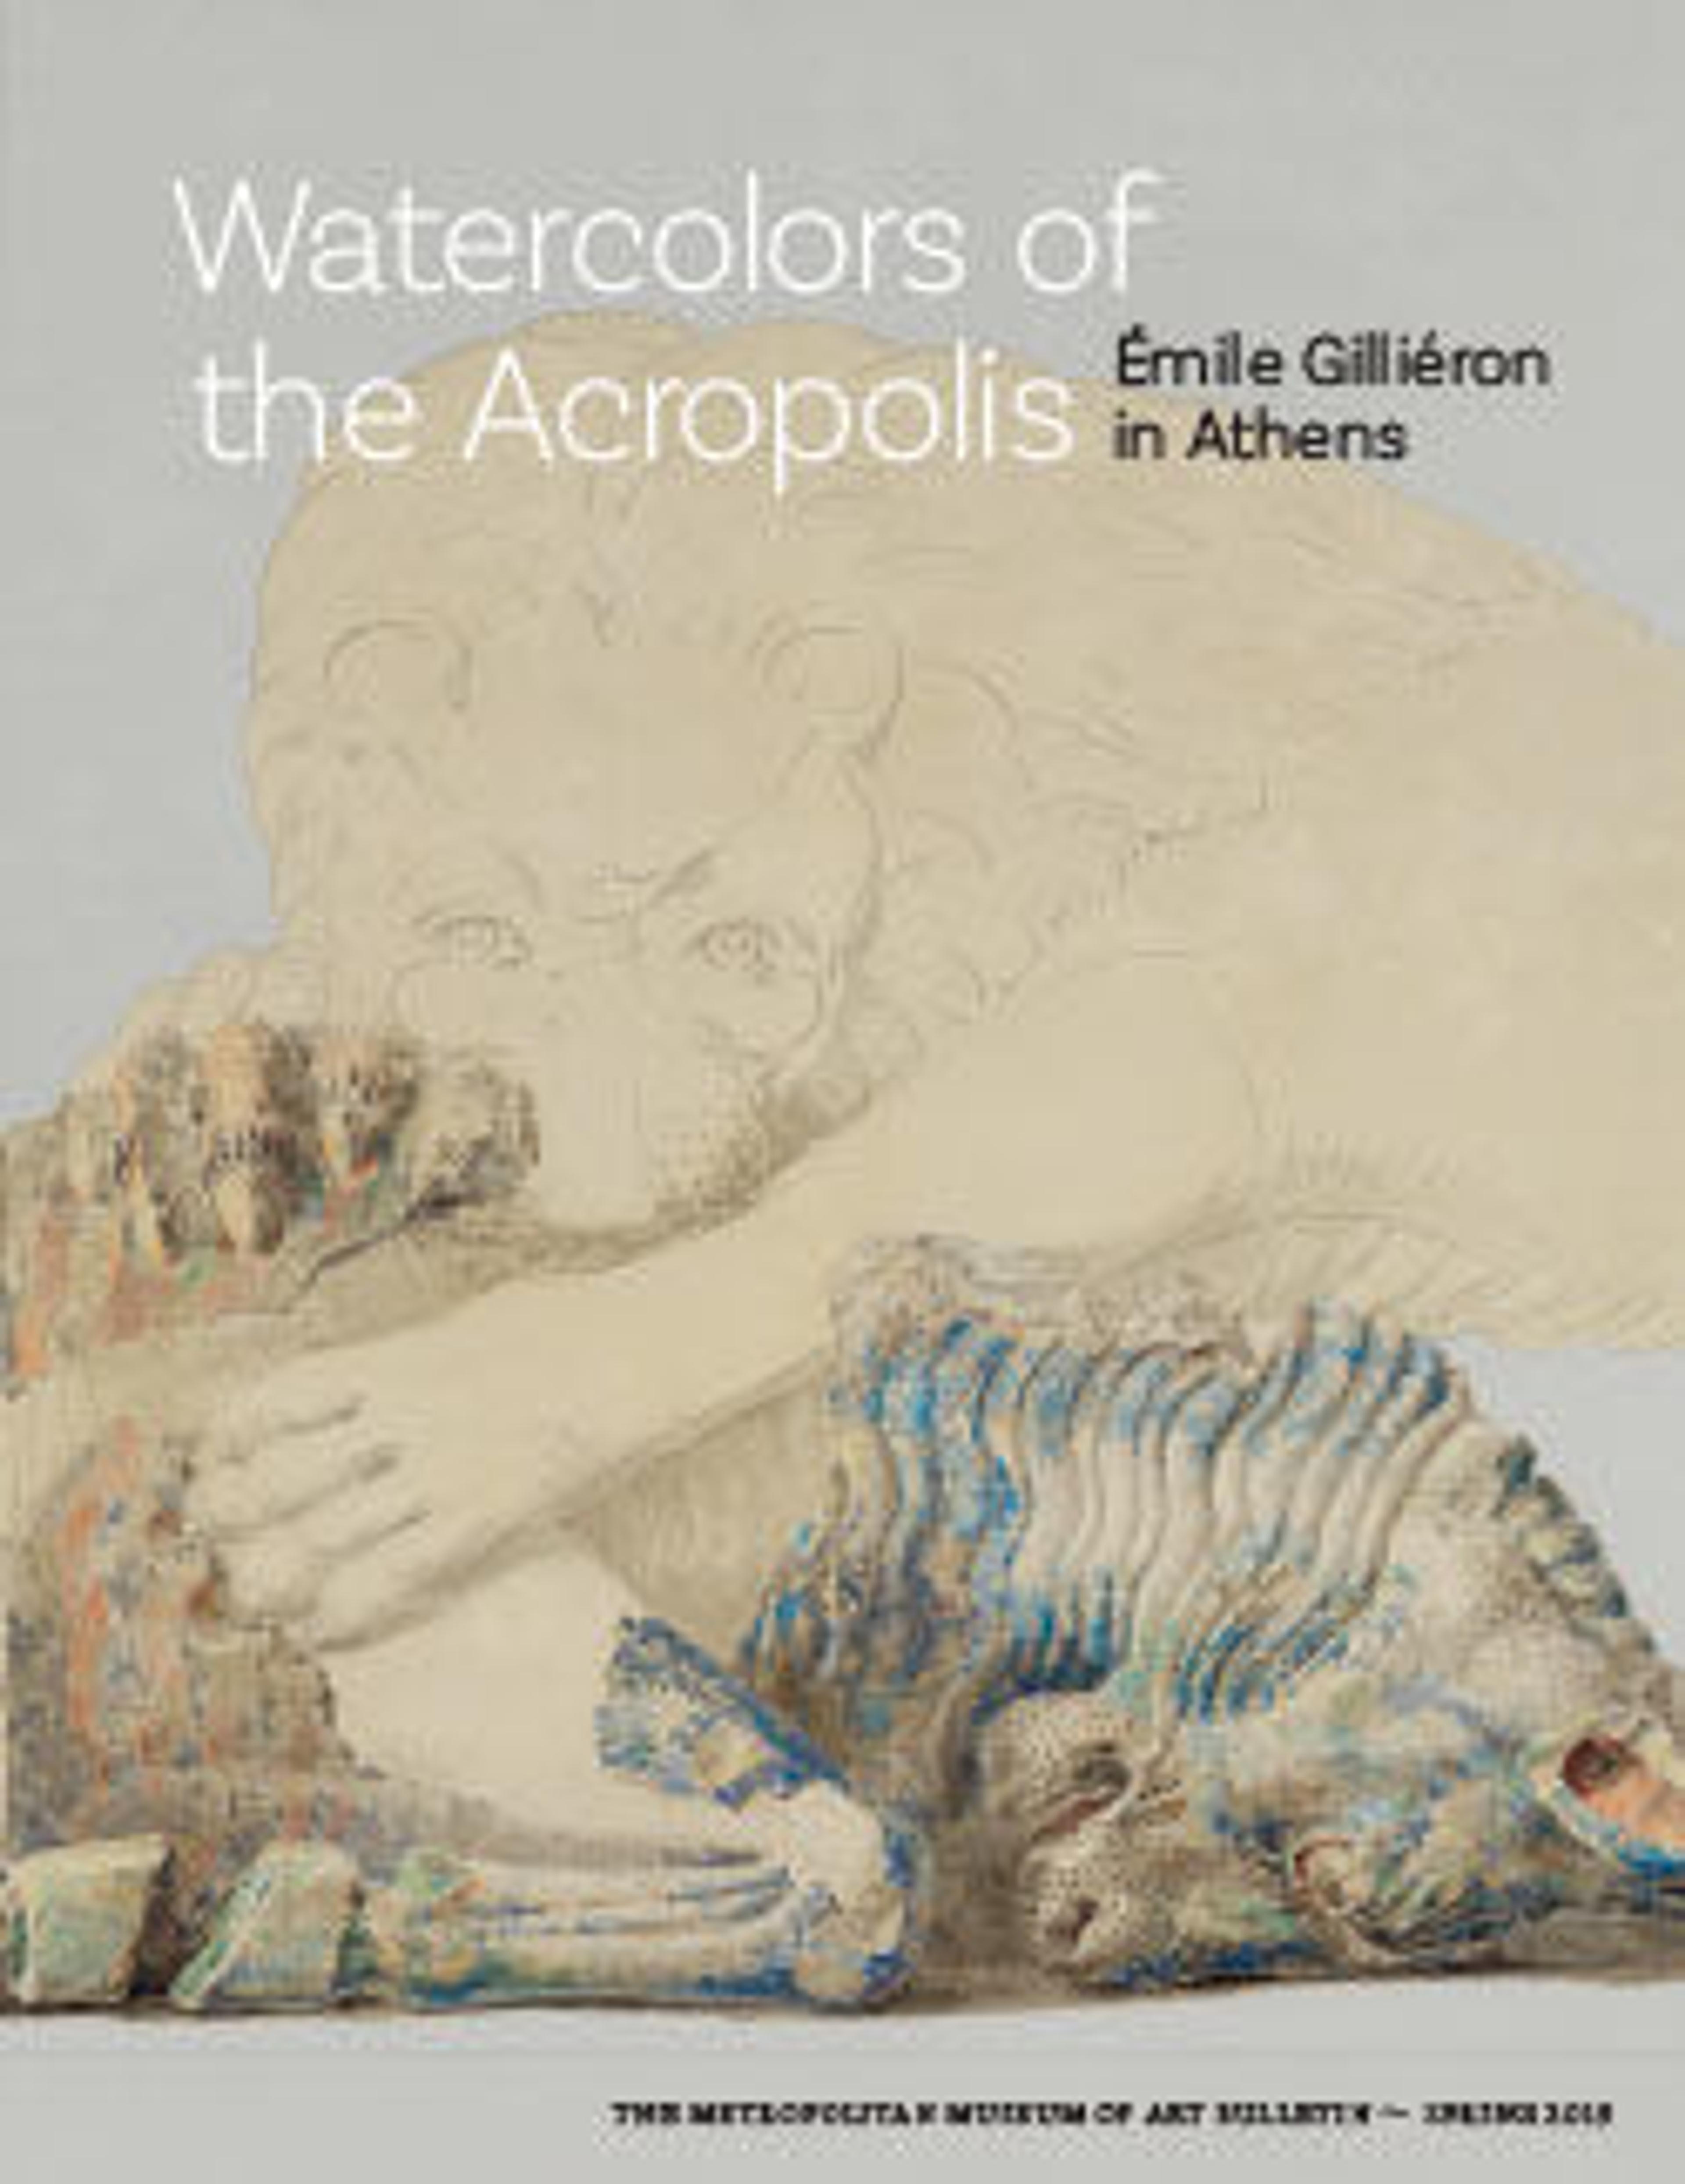 Watercolors of the Acropolis: Émile Gilliéron in Athens